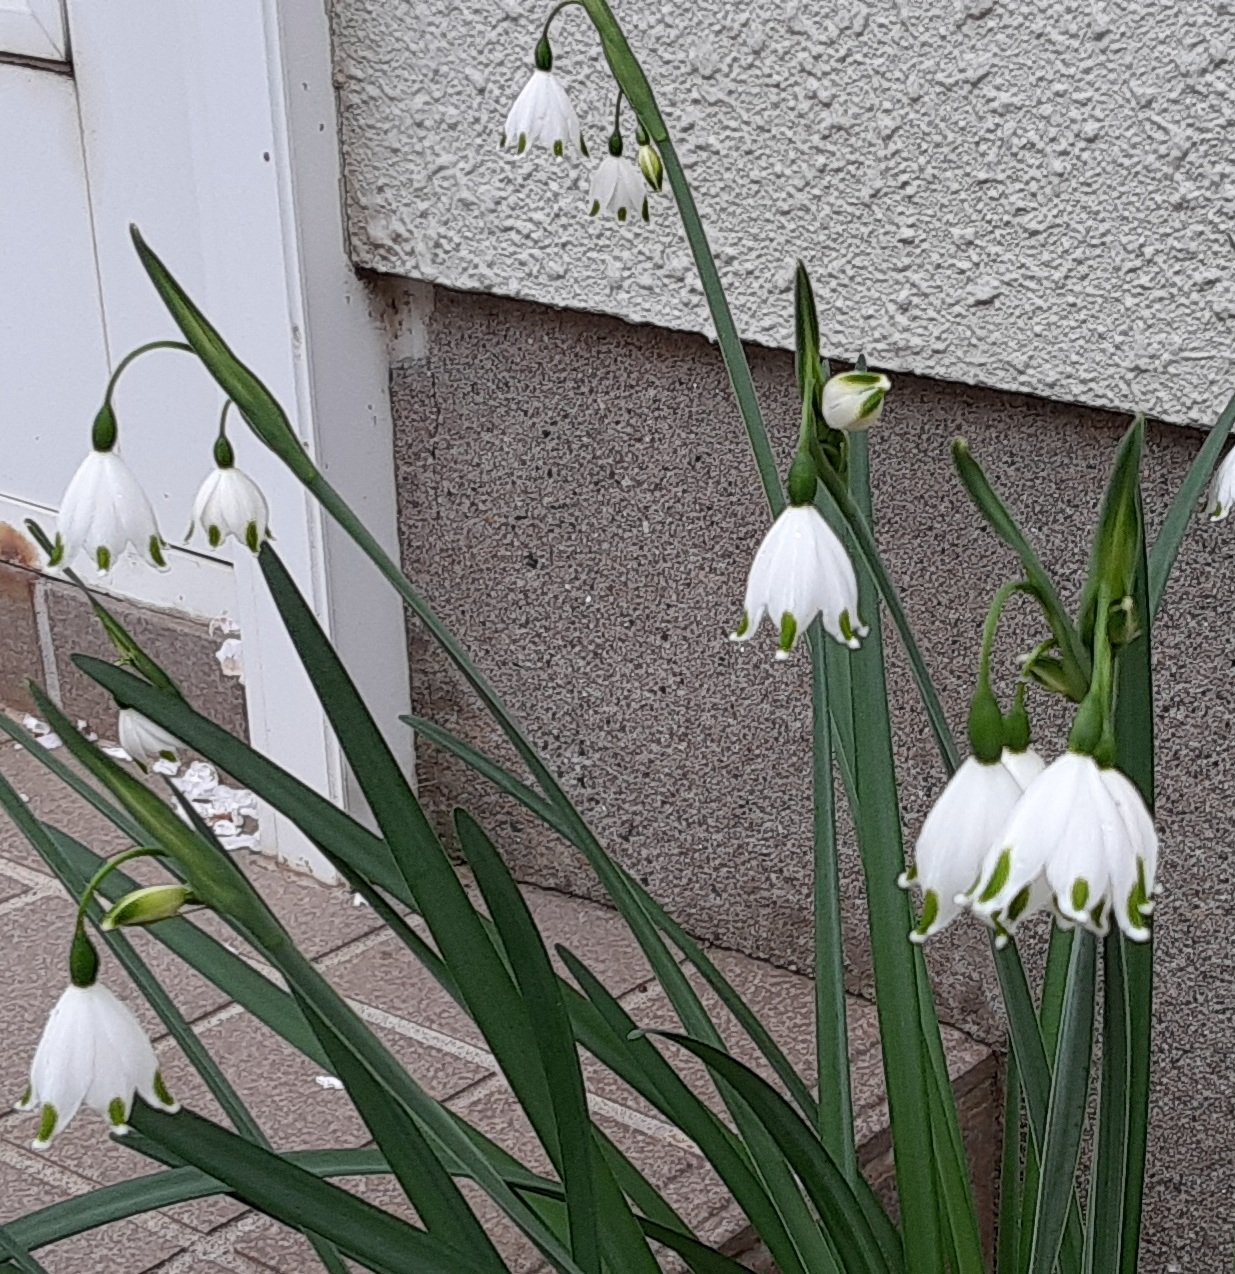 タッピ A Twitter 我が家の北玄関に植えてある 花が すずらん に似てる スノーフレーク またの名を鈴蘭水仙 この小さな白い花が なつかしい 故郷の雪解け風景を 思い起こさせててくれます 𓍯 T Co Glkejrqdl0 Twitter